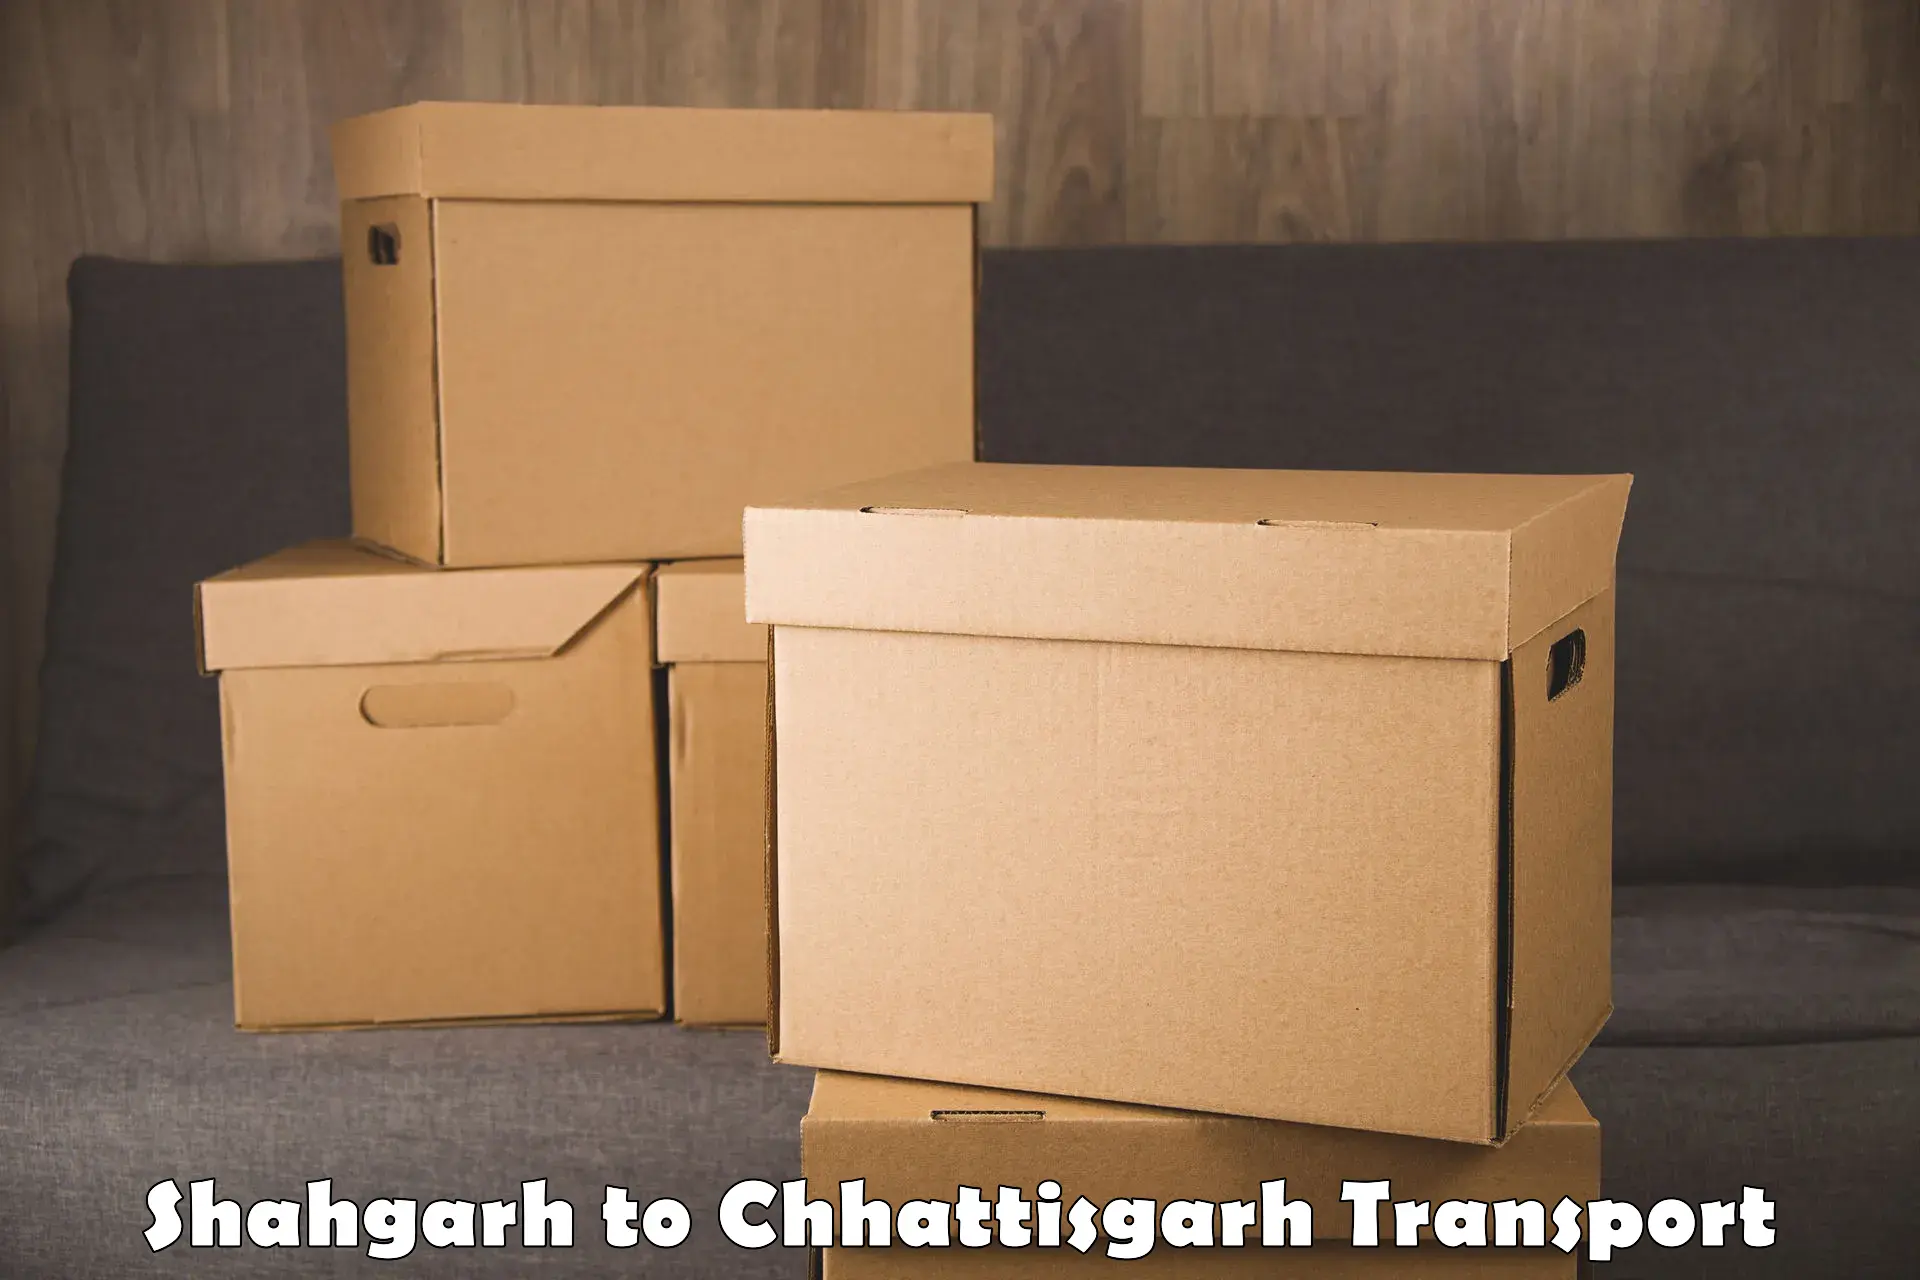 Container transport service Shahgarh to Mahasamund